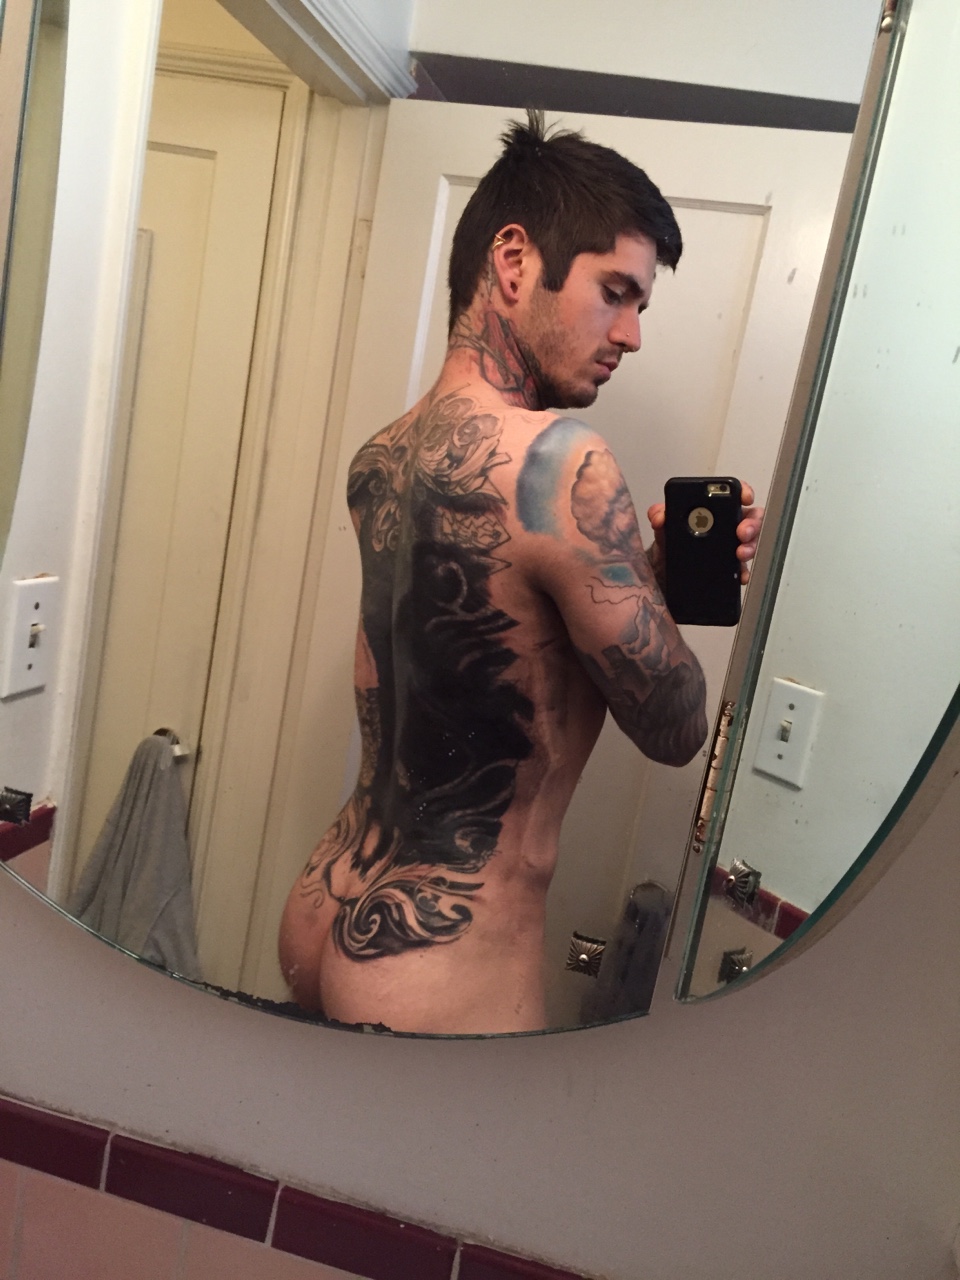 Ethan modboy bramble - nude photos